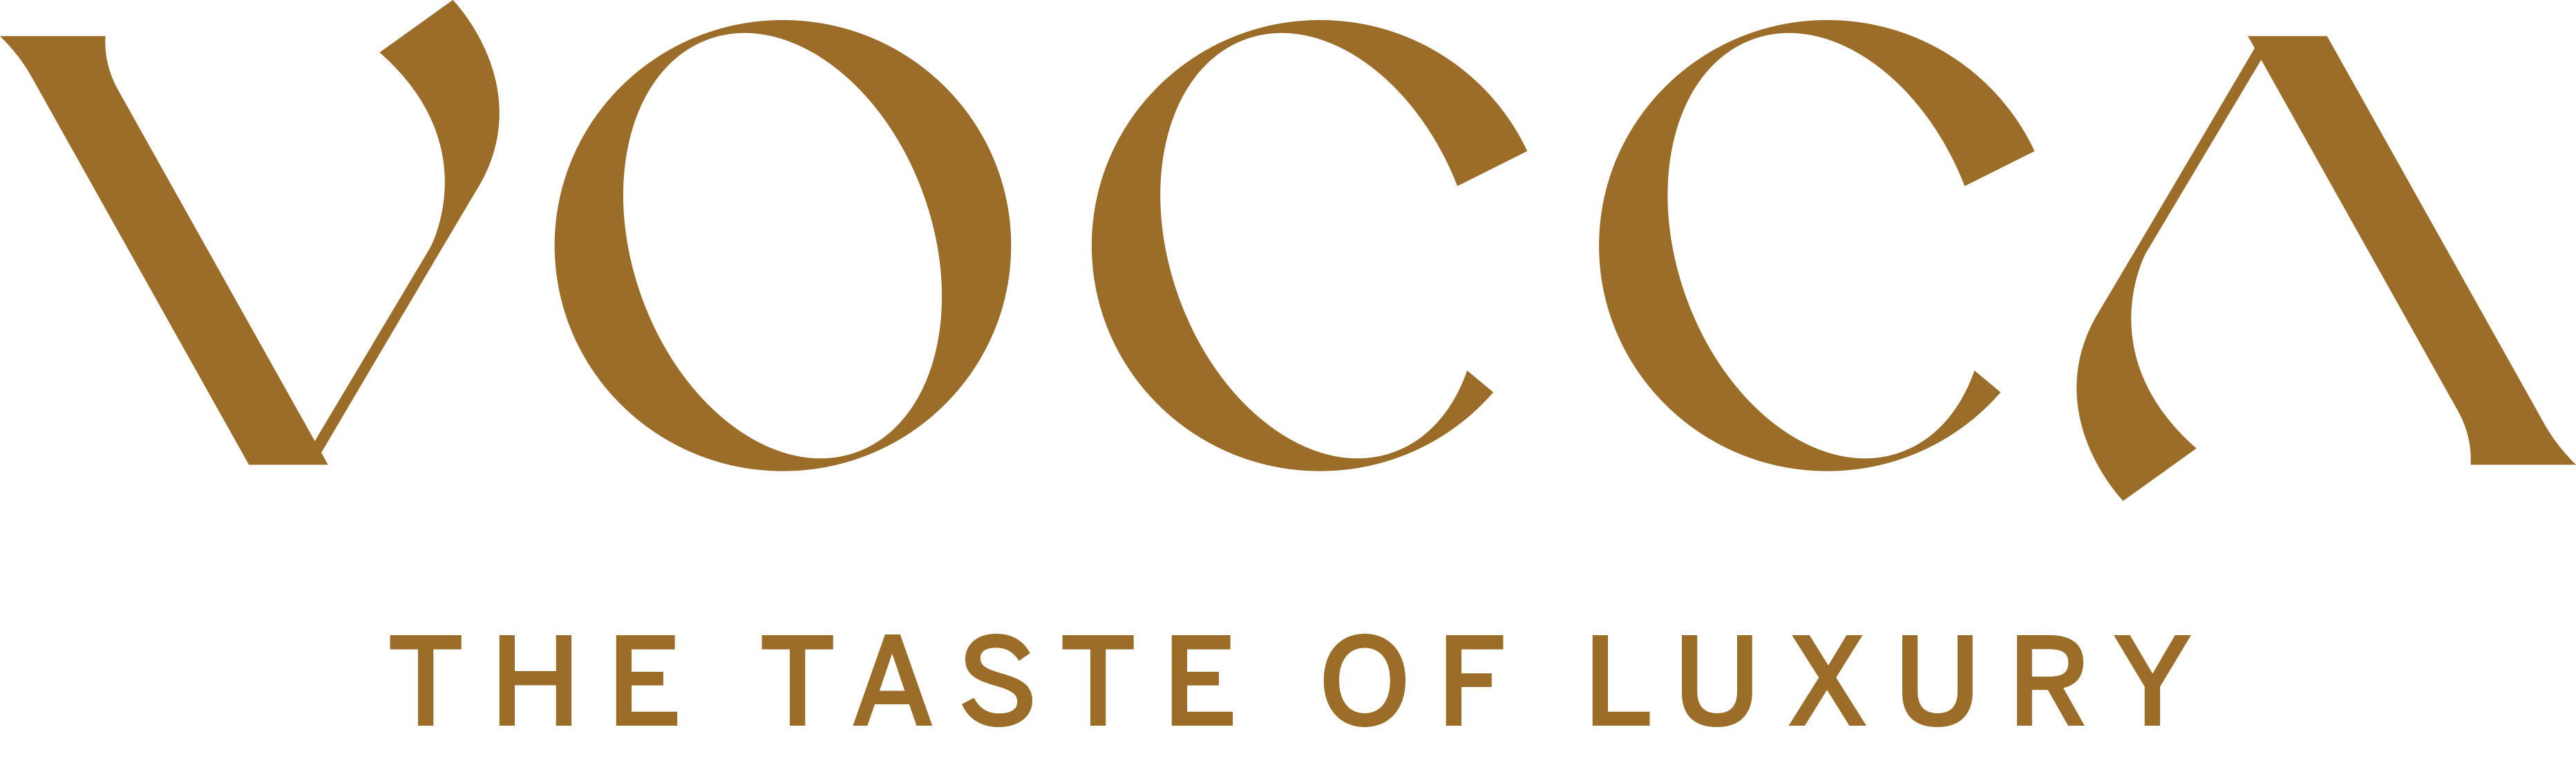 VOCCA Logo